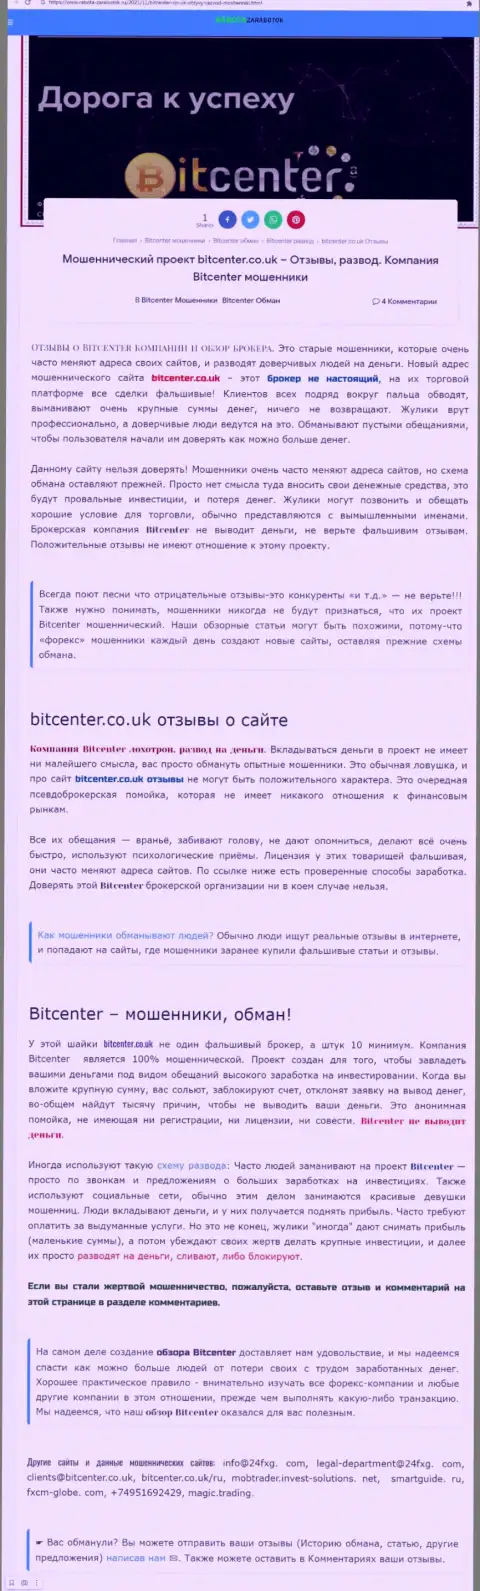 Bit Center - это компания, совместное взаимодействие с которой доставляет только лишь потери (обзор)